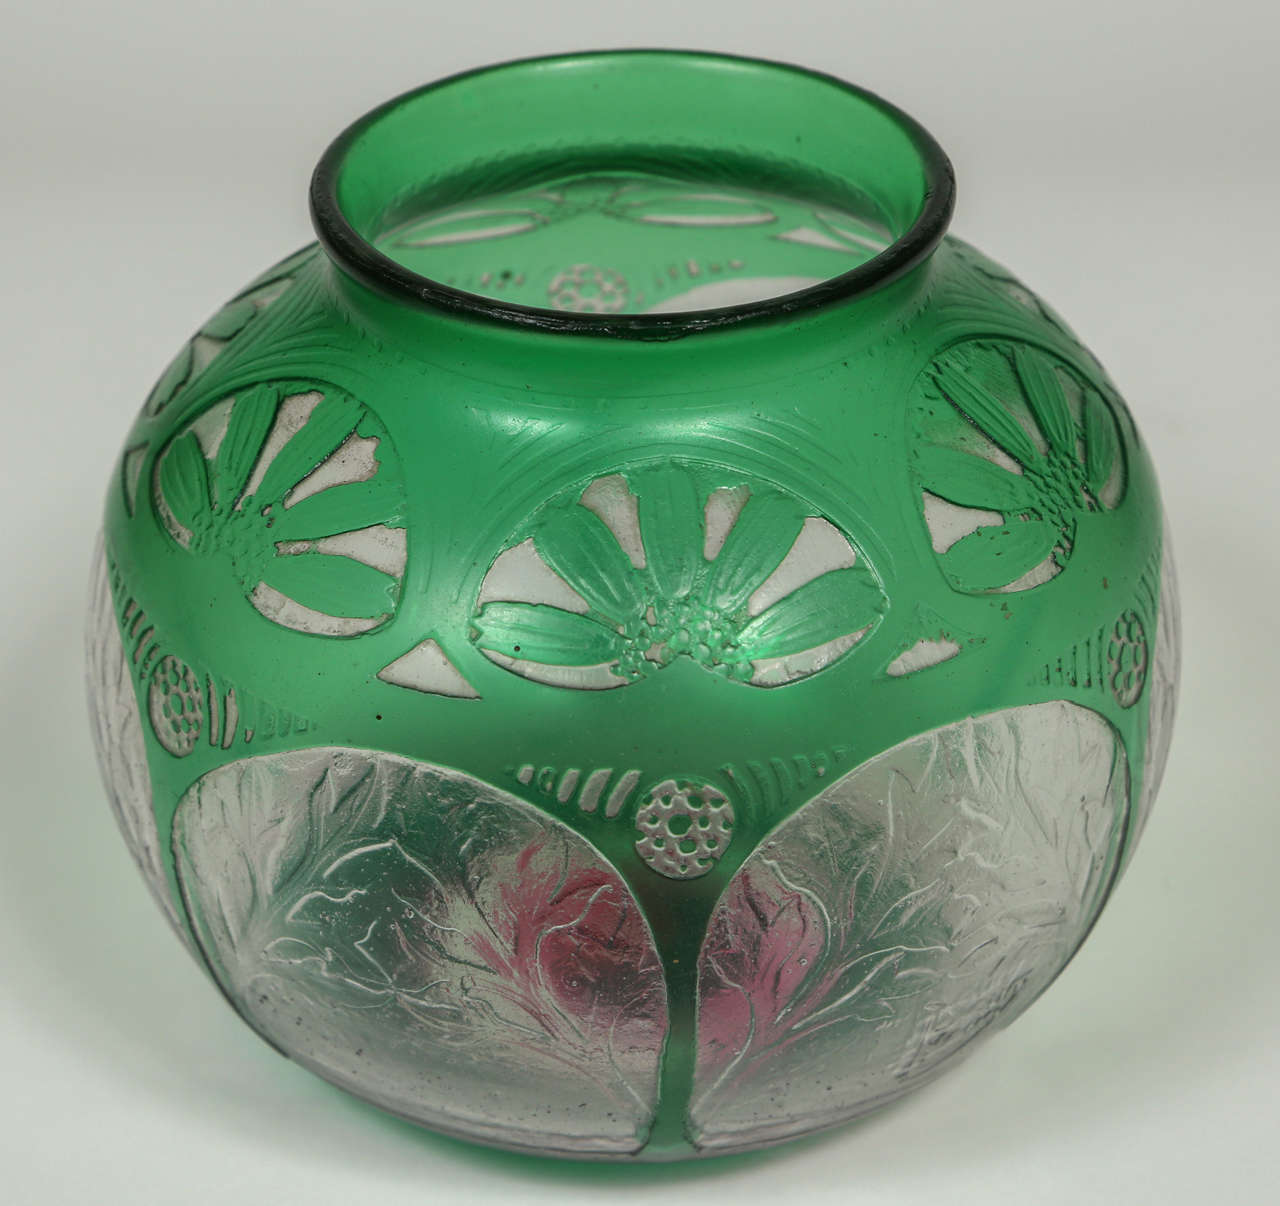 20th Century Art Deco Acid Etched Glass Vase by Daum